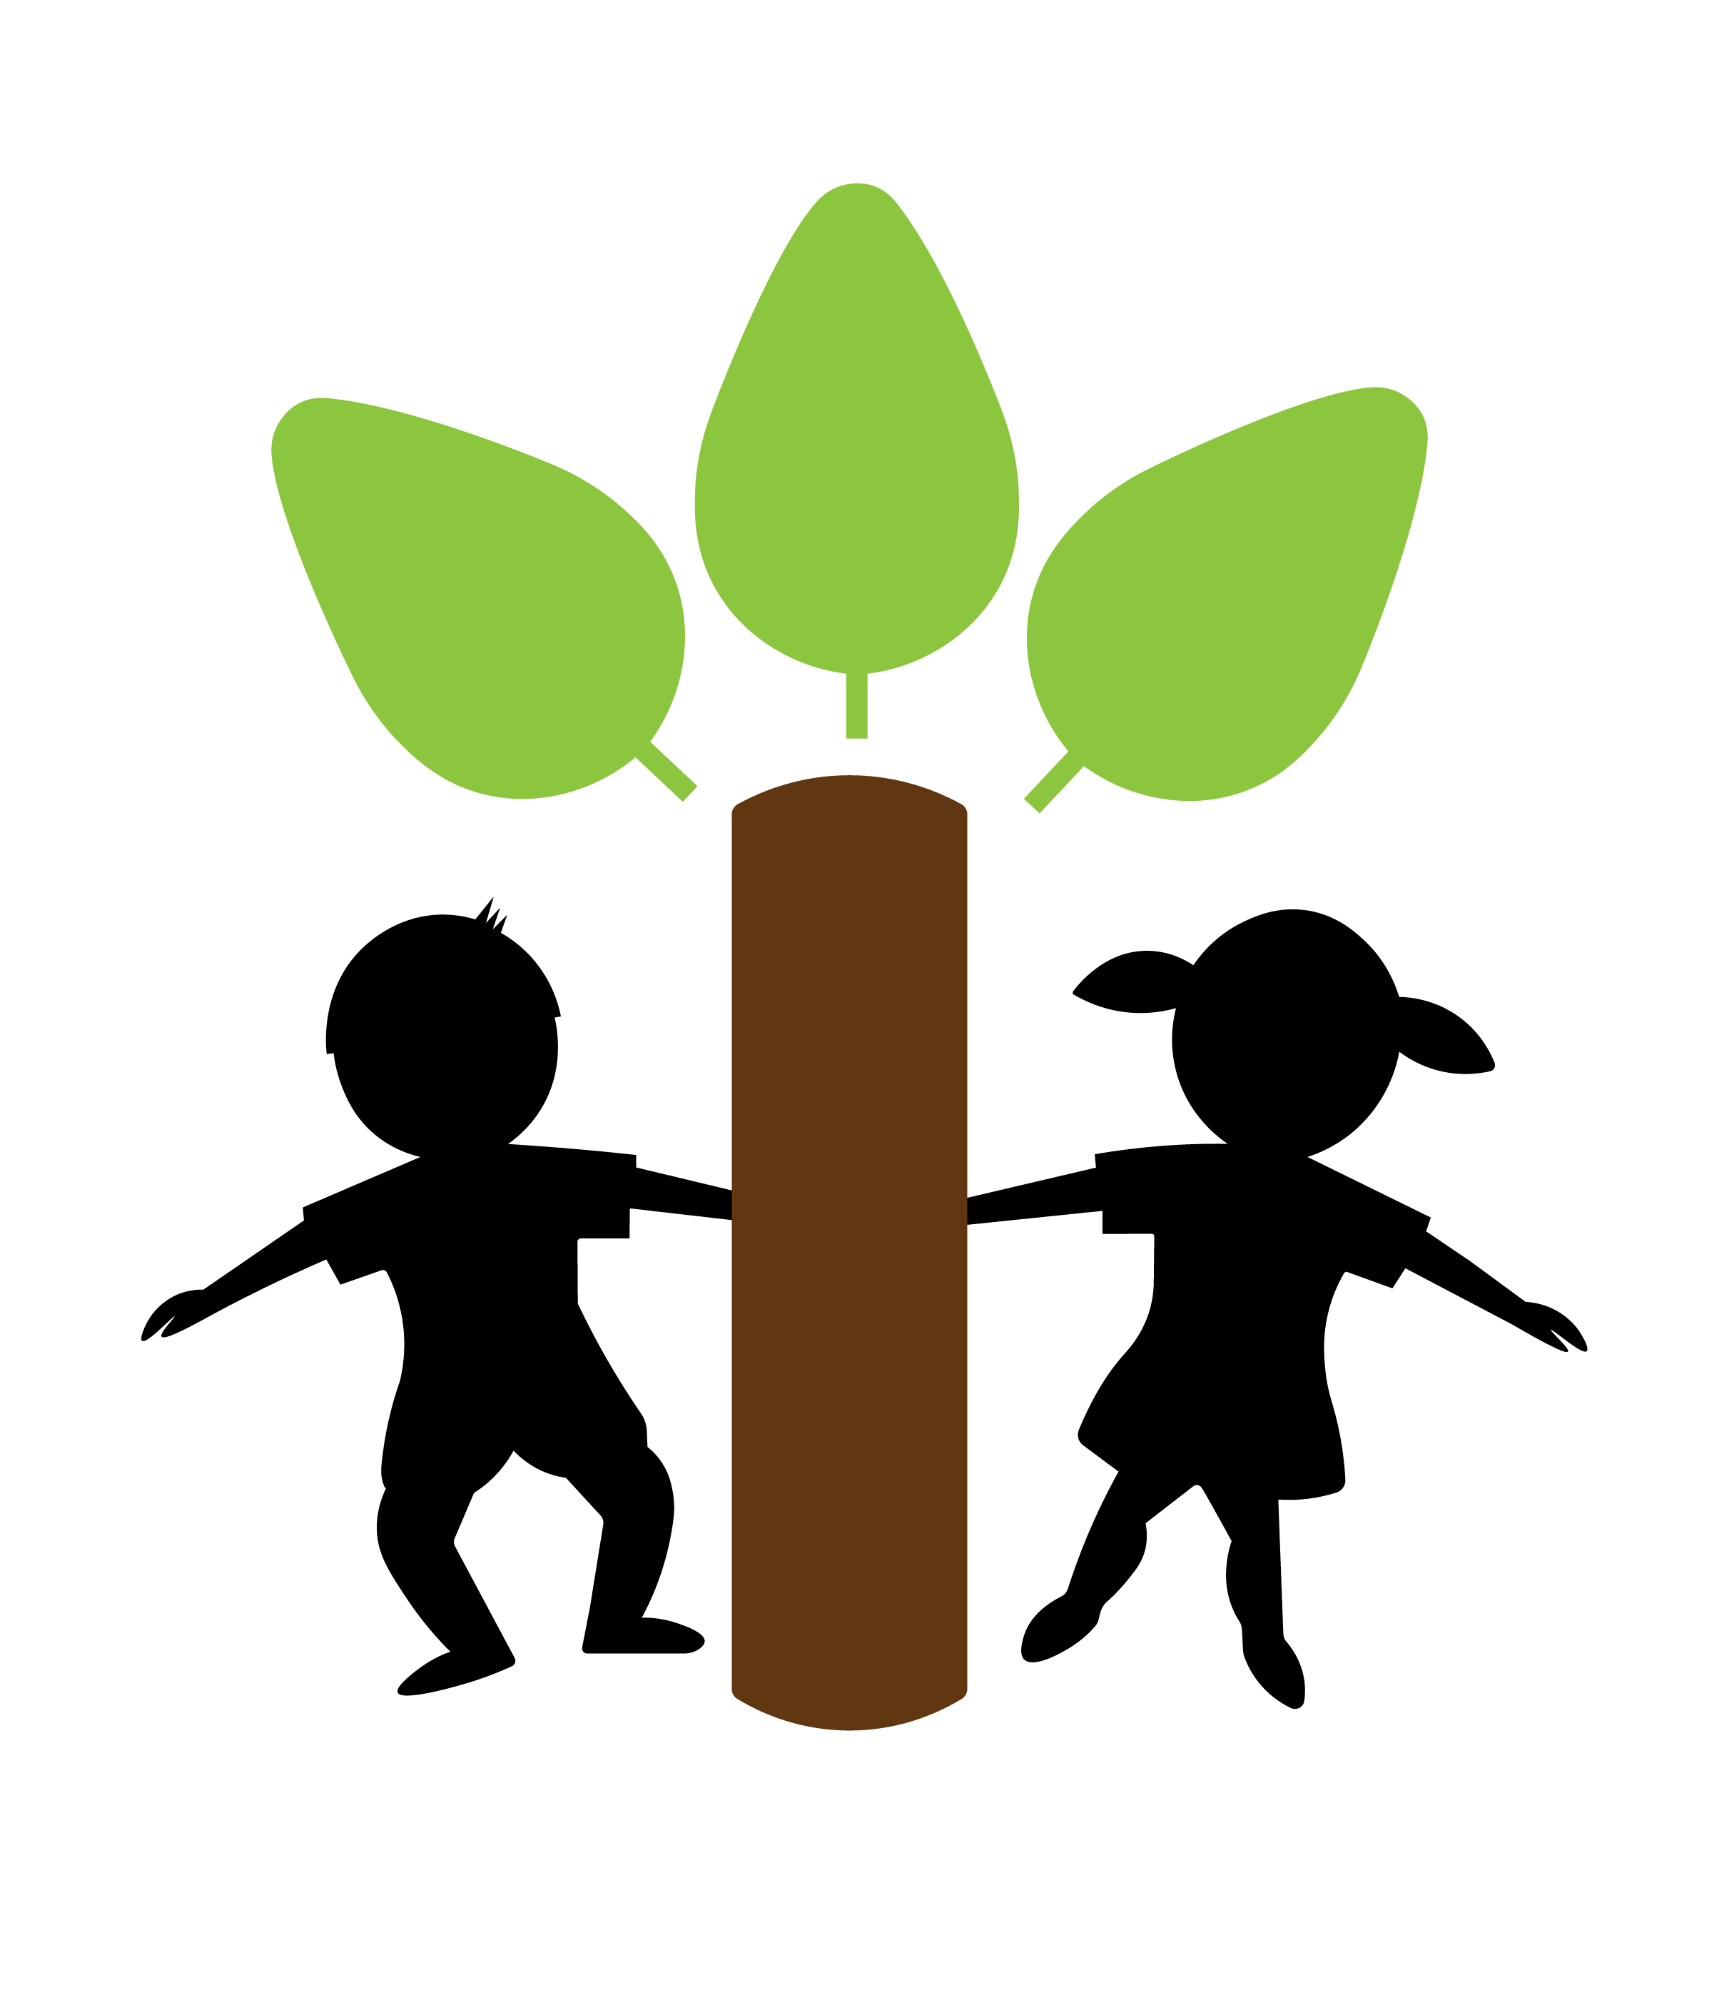 Iver Village Infant Academy logo